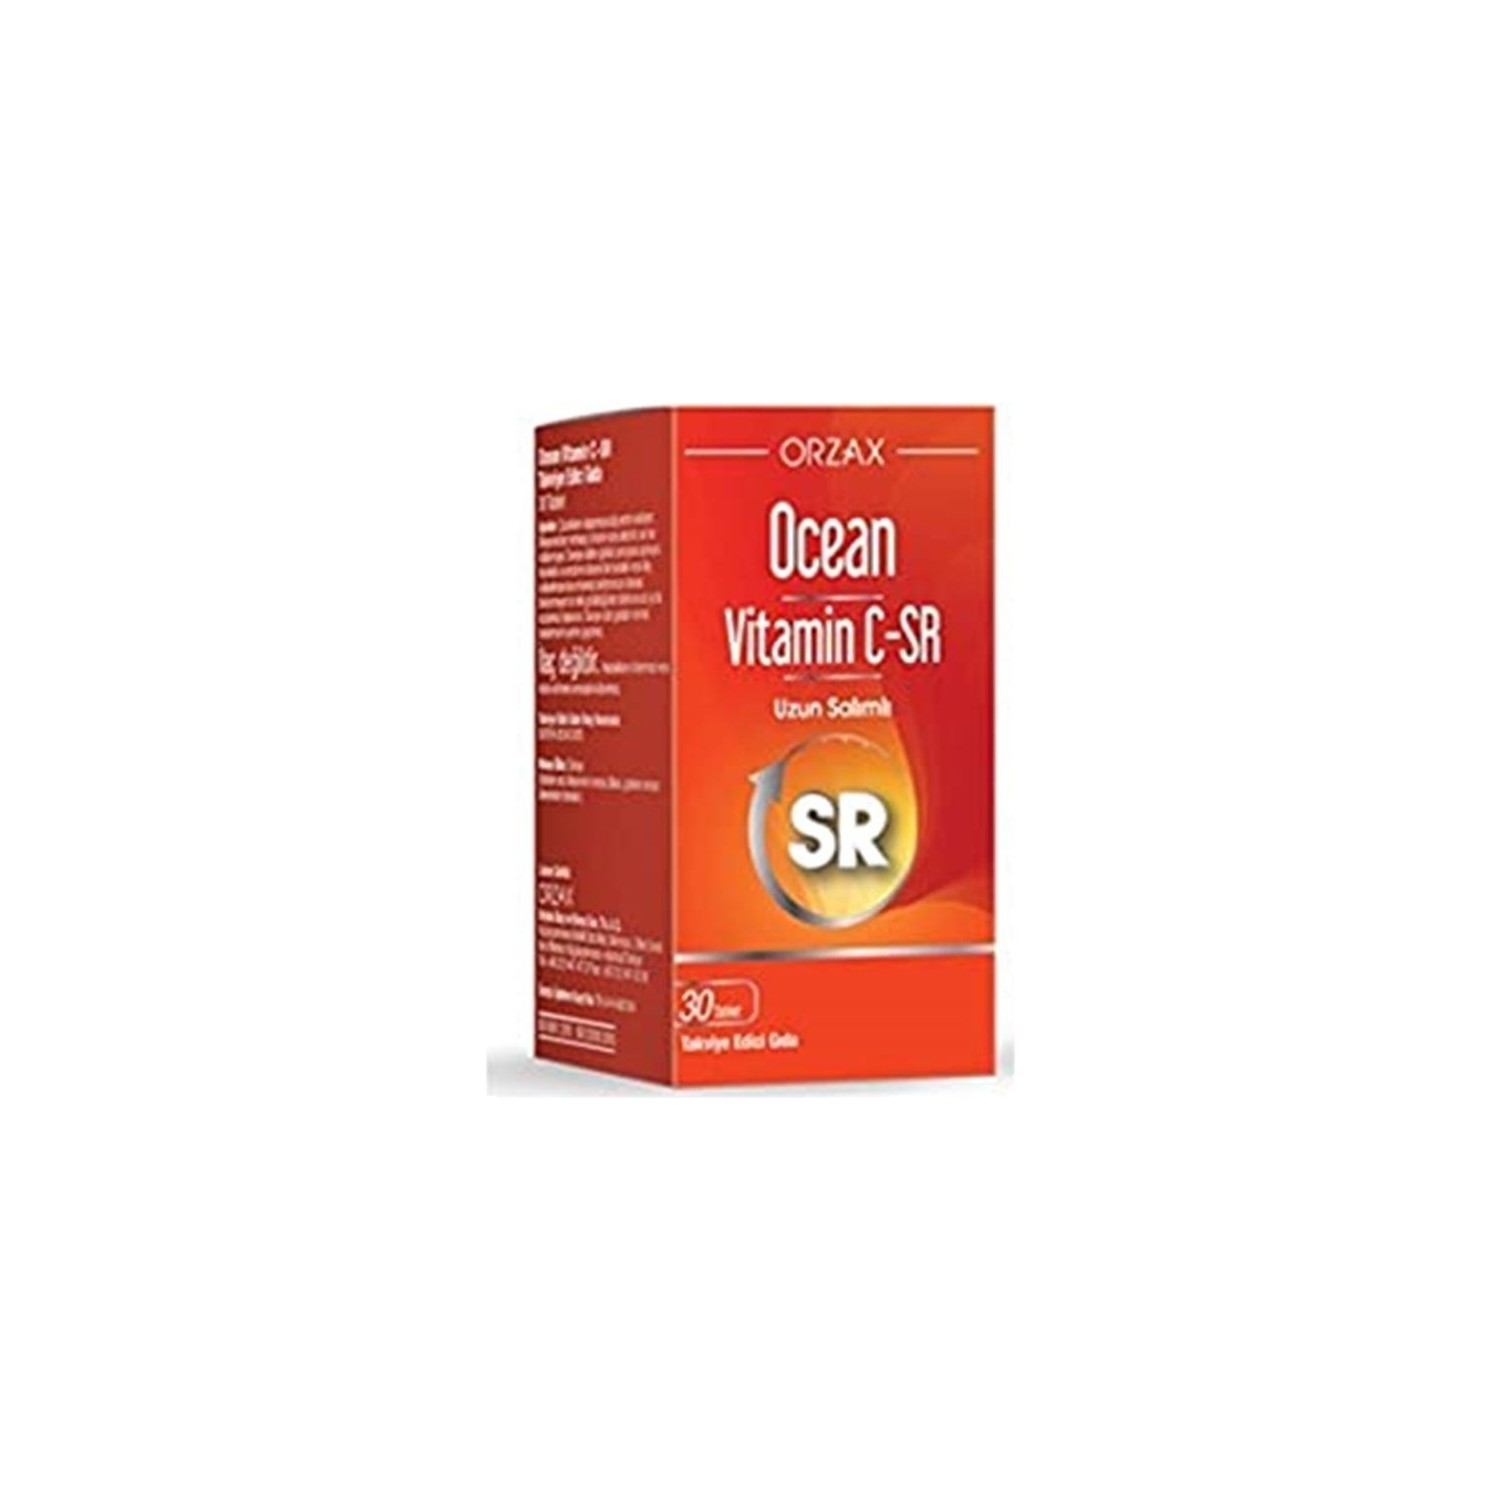 Витамин C-Sr Ocean, 30 таблеток витамин c sr ocean 500 мг 30 таблеток